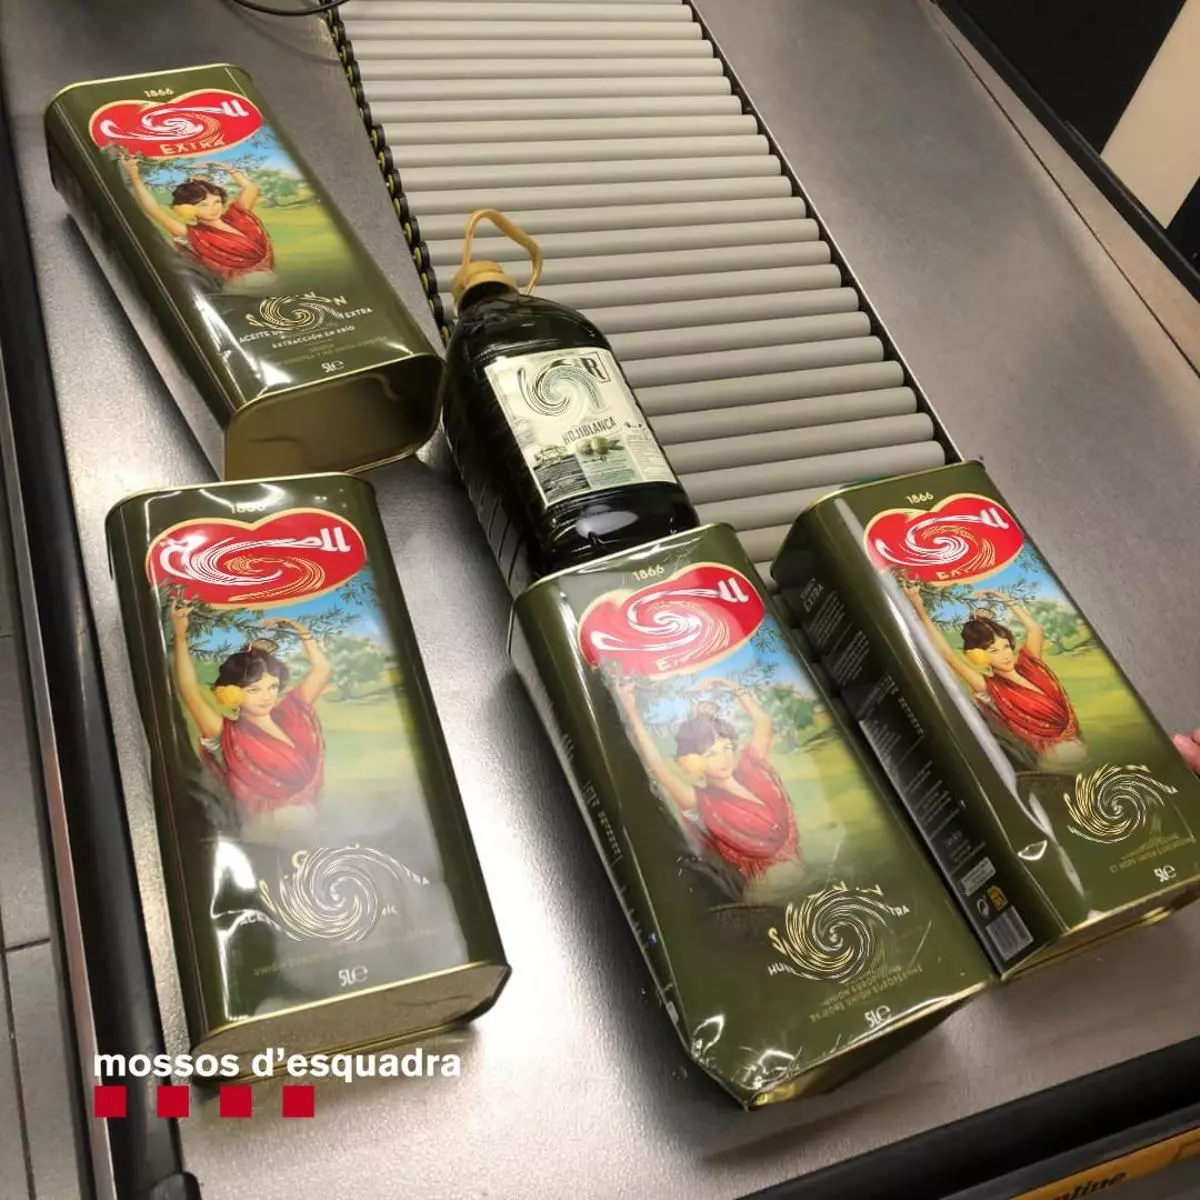 Proven de robar oli d'oliva d'un supermercat de Palafrugell i intenten atropellar el vigilant de seguretat